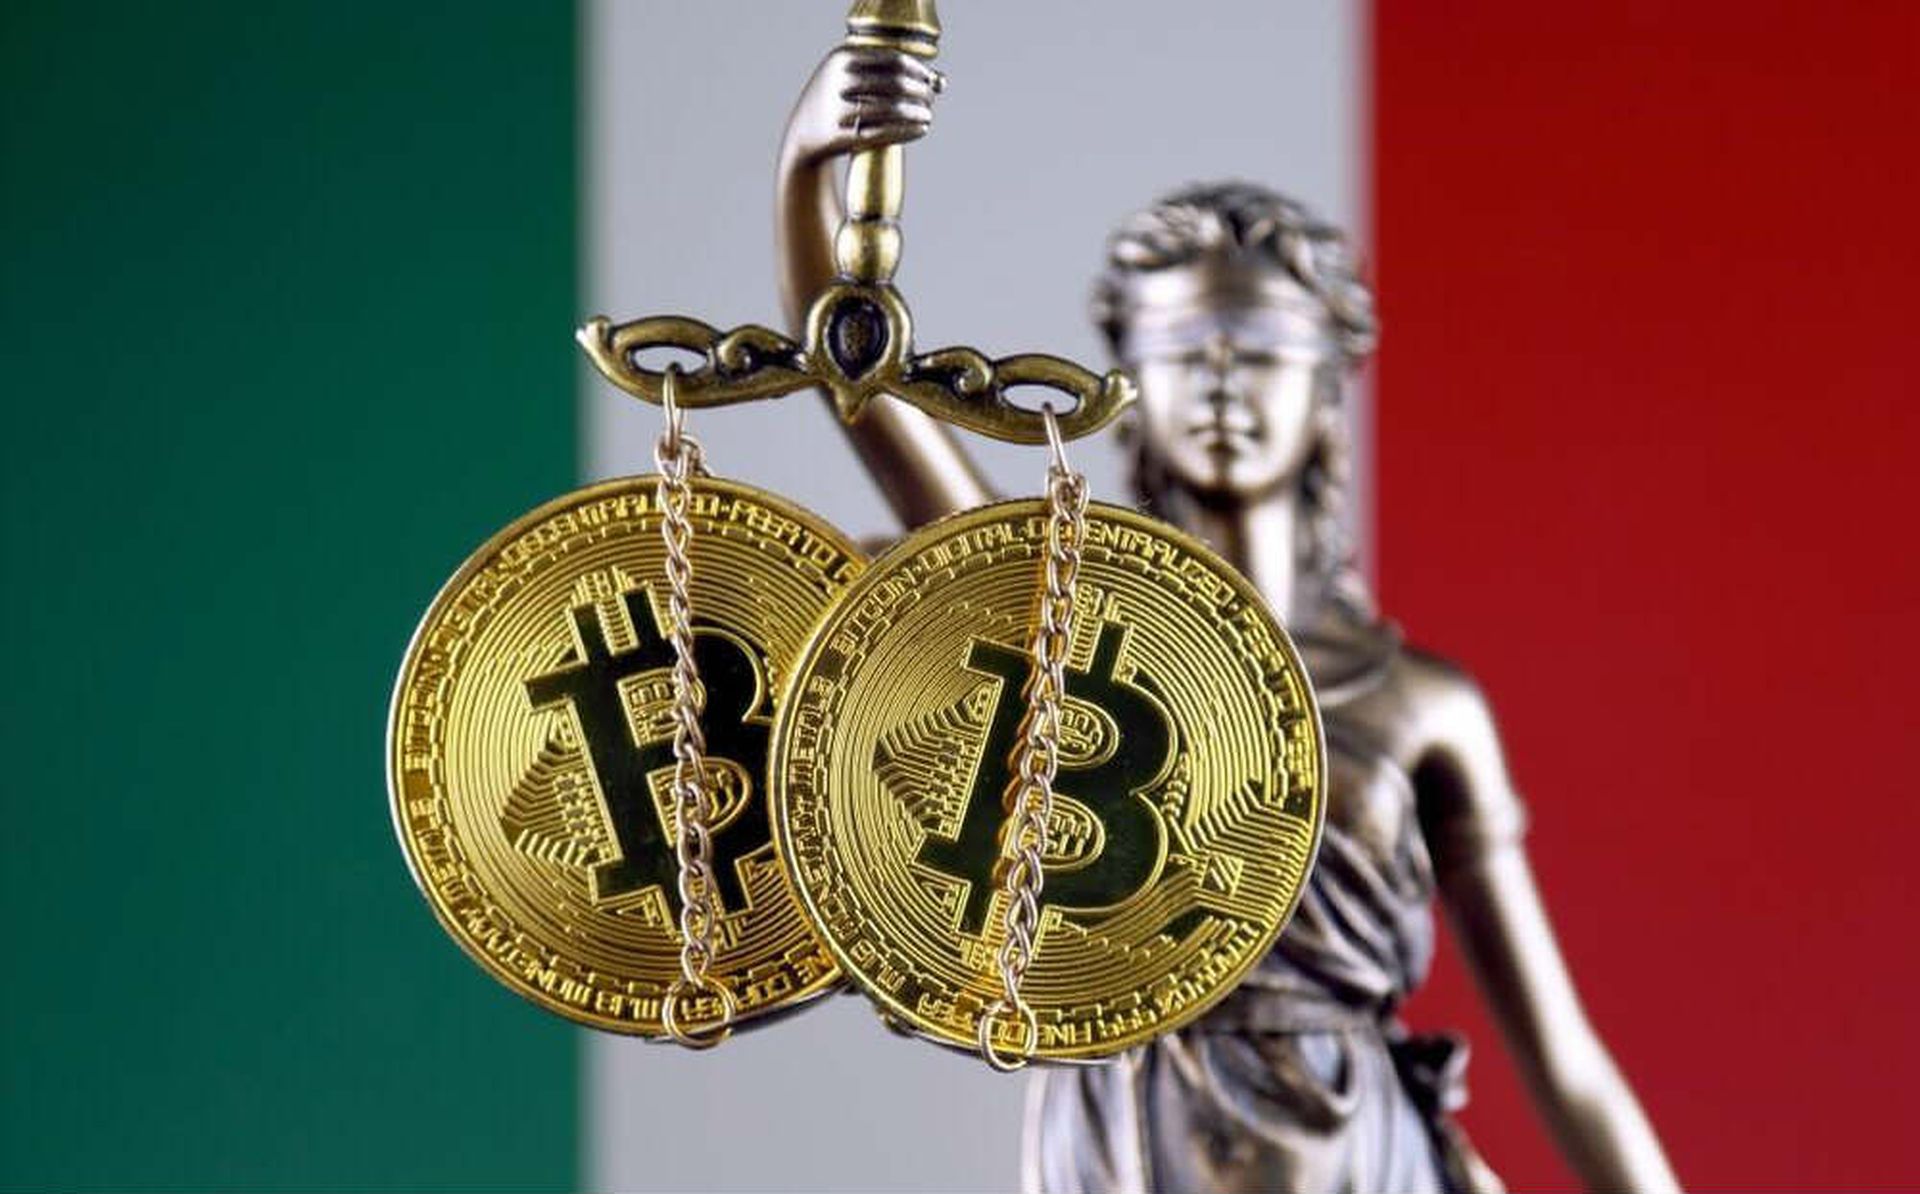 %26 Włoski podatek kryptograficzny zacznie być nakładany od 2023 r